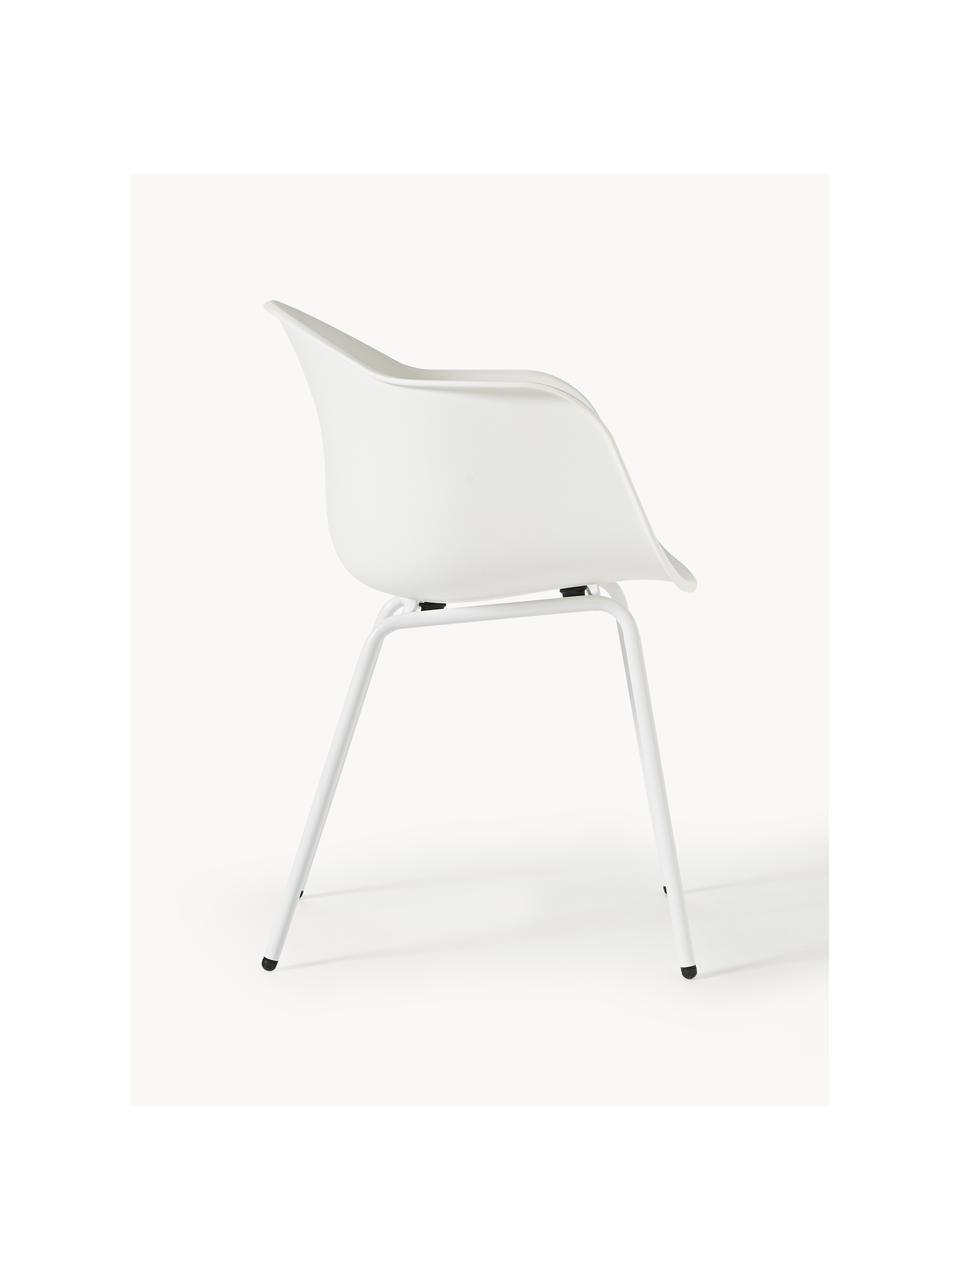 Interiérová/exteriérová židle Claire, Bílá, Š 60 cm, H 54 cm